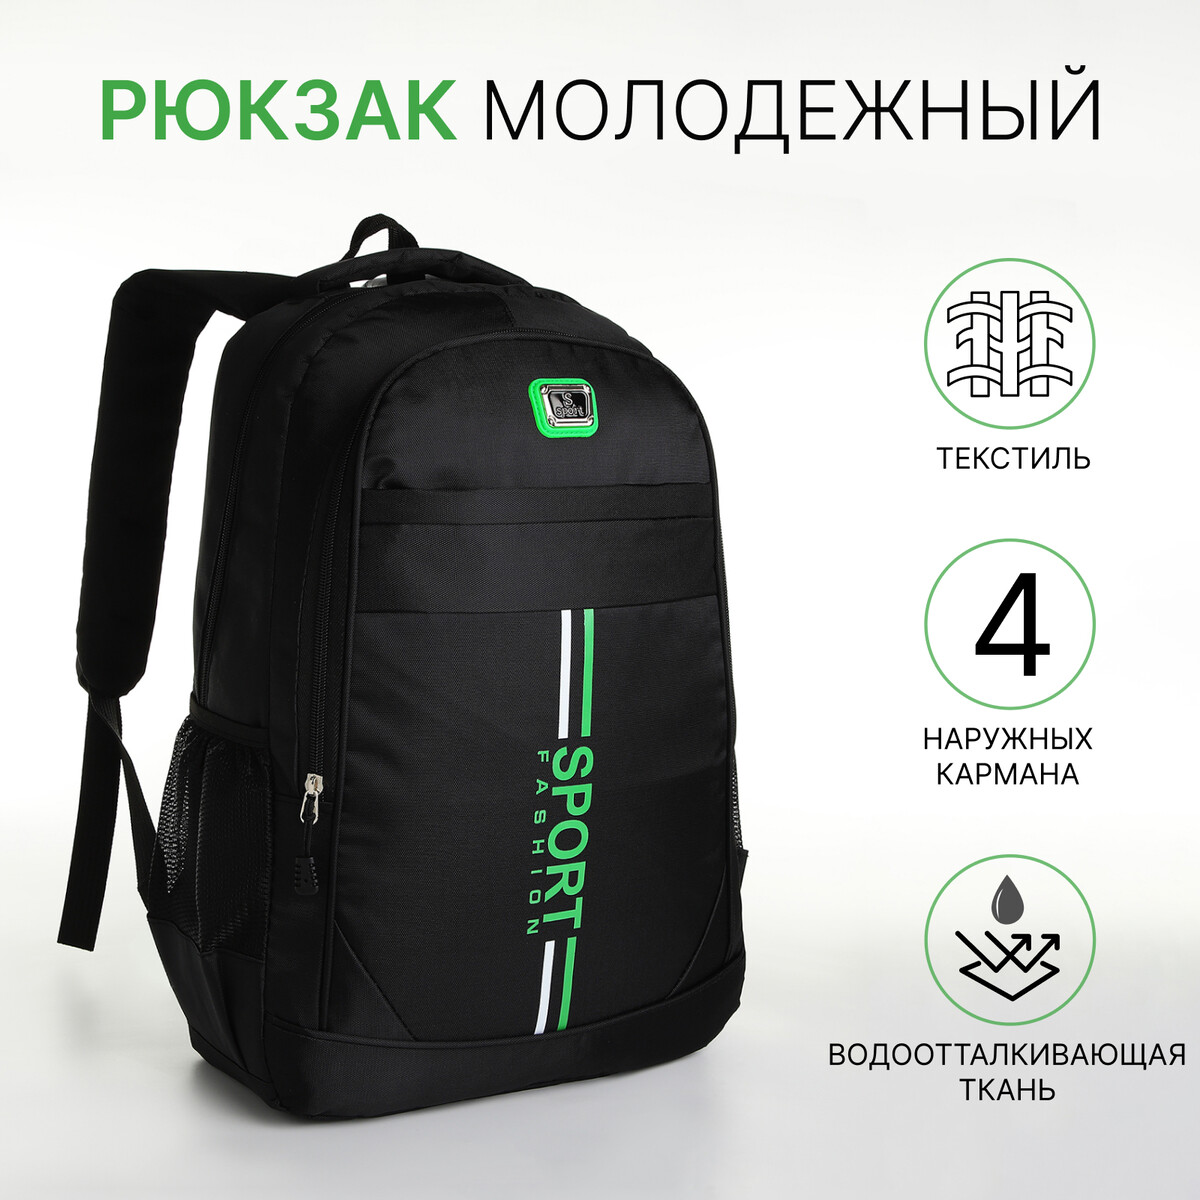 Рюкзак молодежный на молнии, 4 кармана, цвет черный/зеленый рюкзак молодежный из текстиля 2 отдела на молнии 4 кармана зеленый